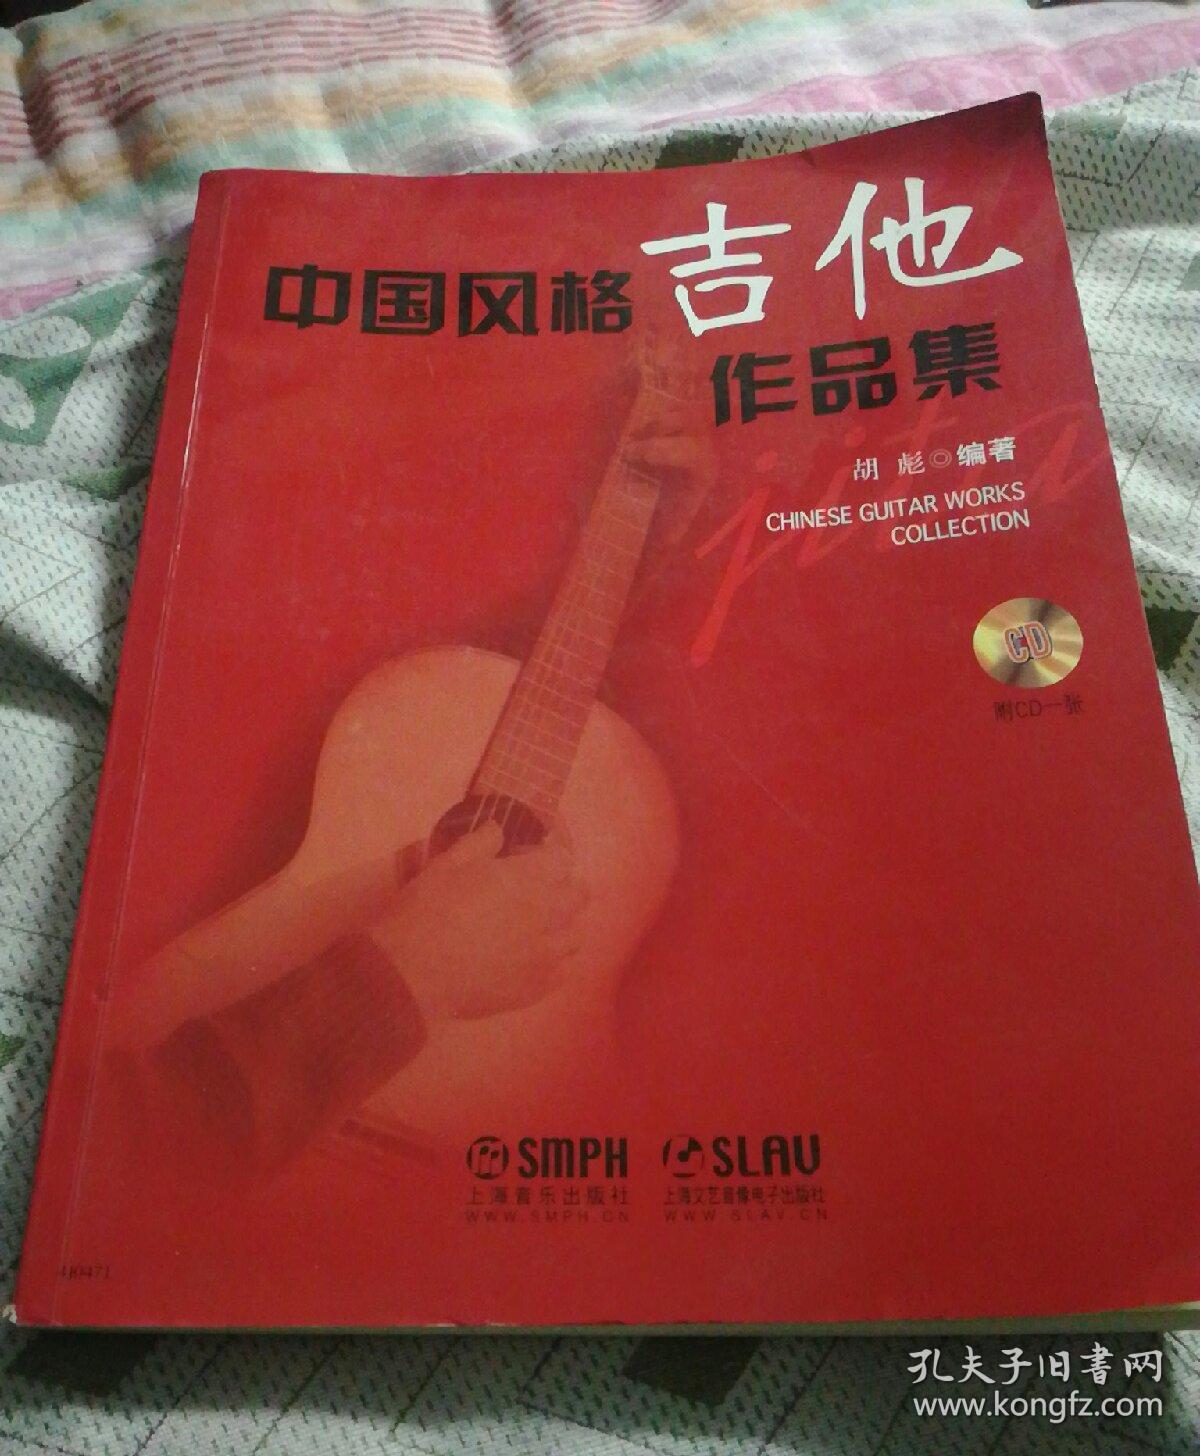 中国风格吉他作品集